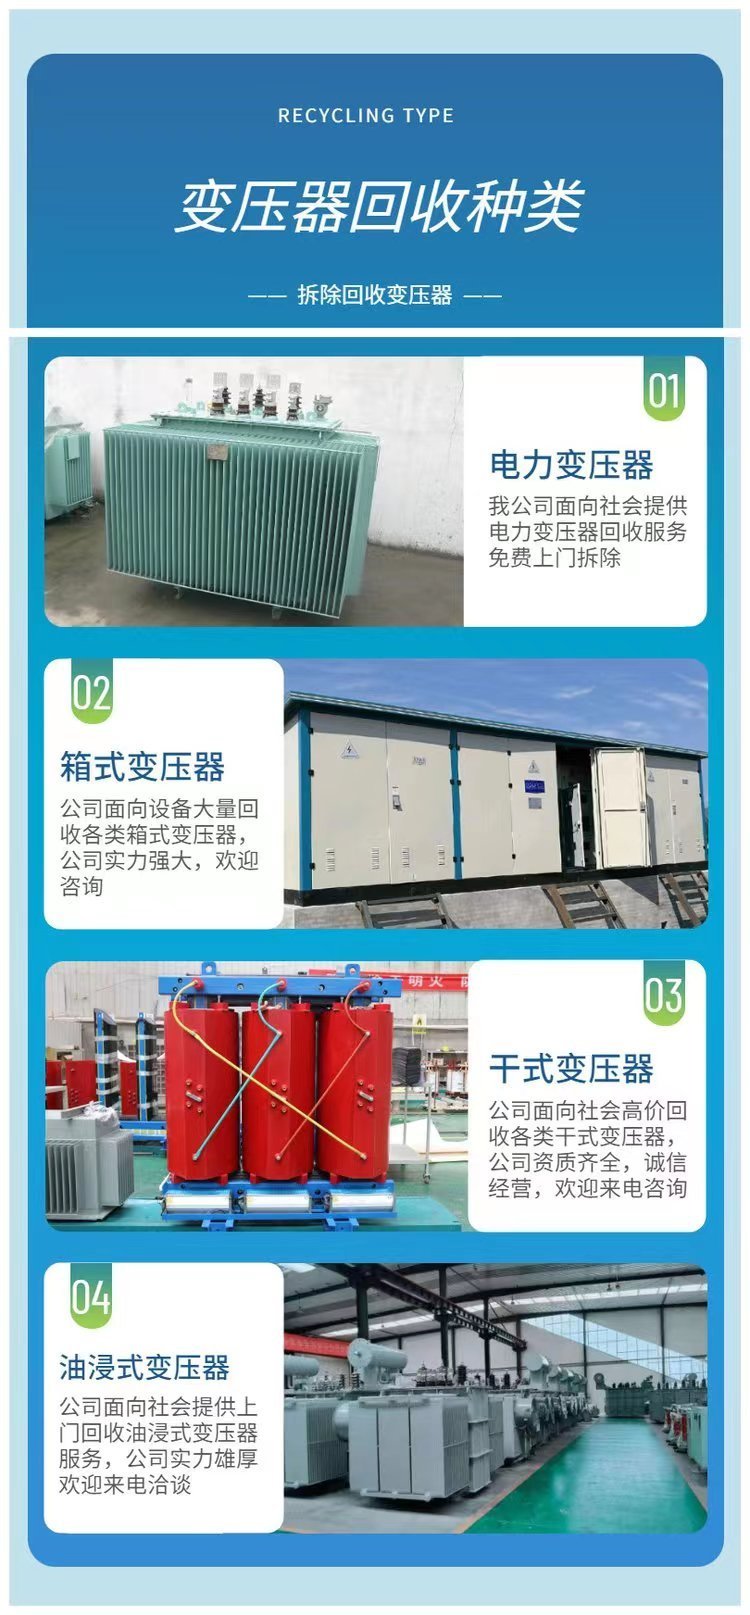 惠州机械设备拆除回收变电站收购厂家提供服务